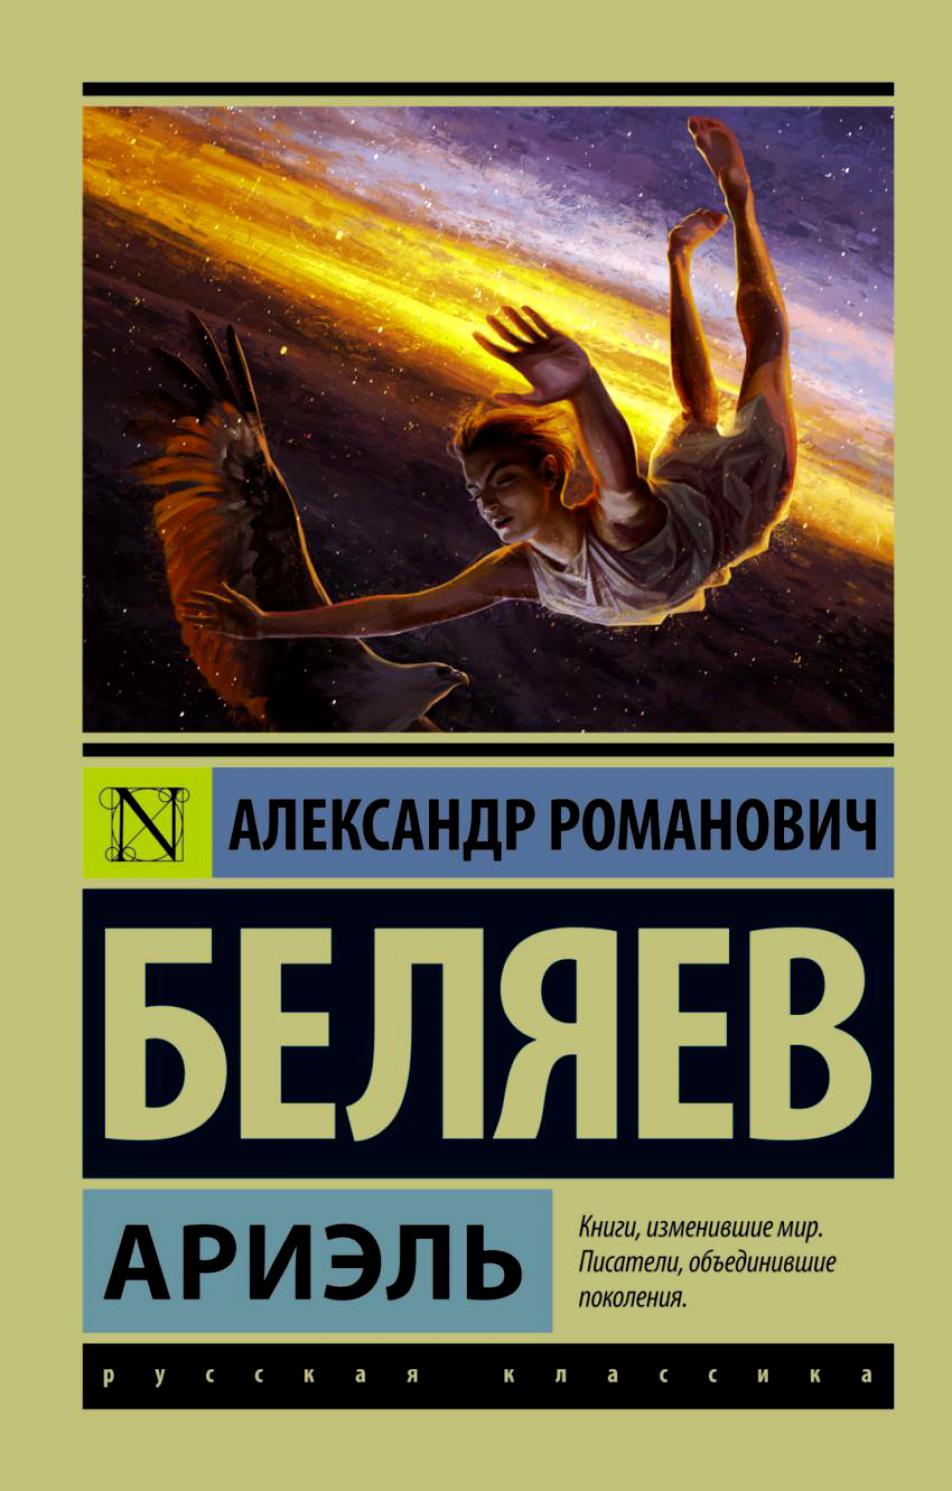 12 Воздушные зайцы 01 | А.Беляев "Ариэль"